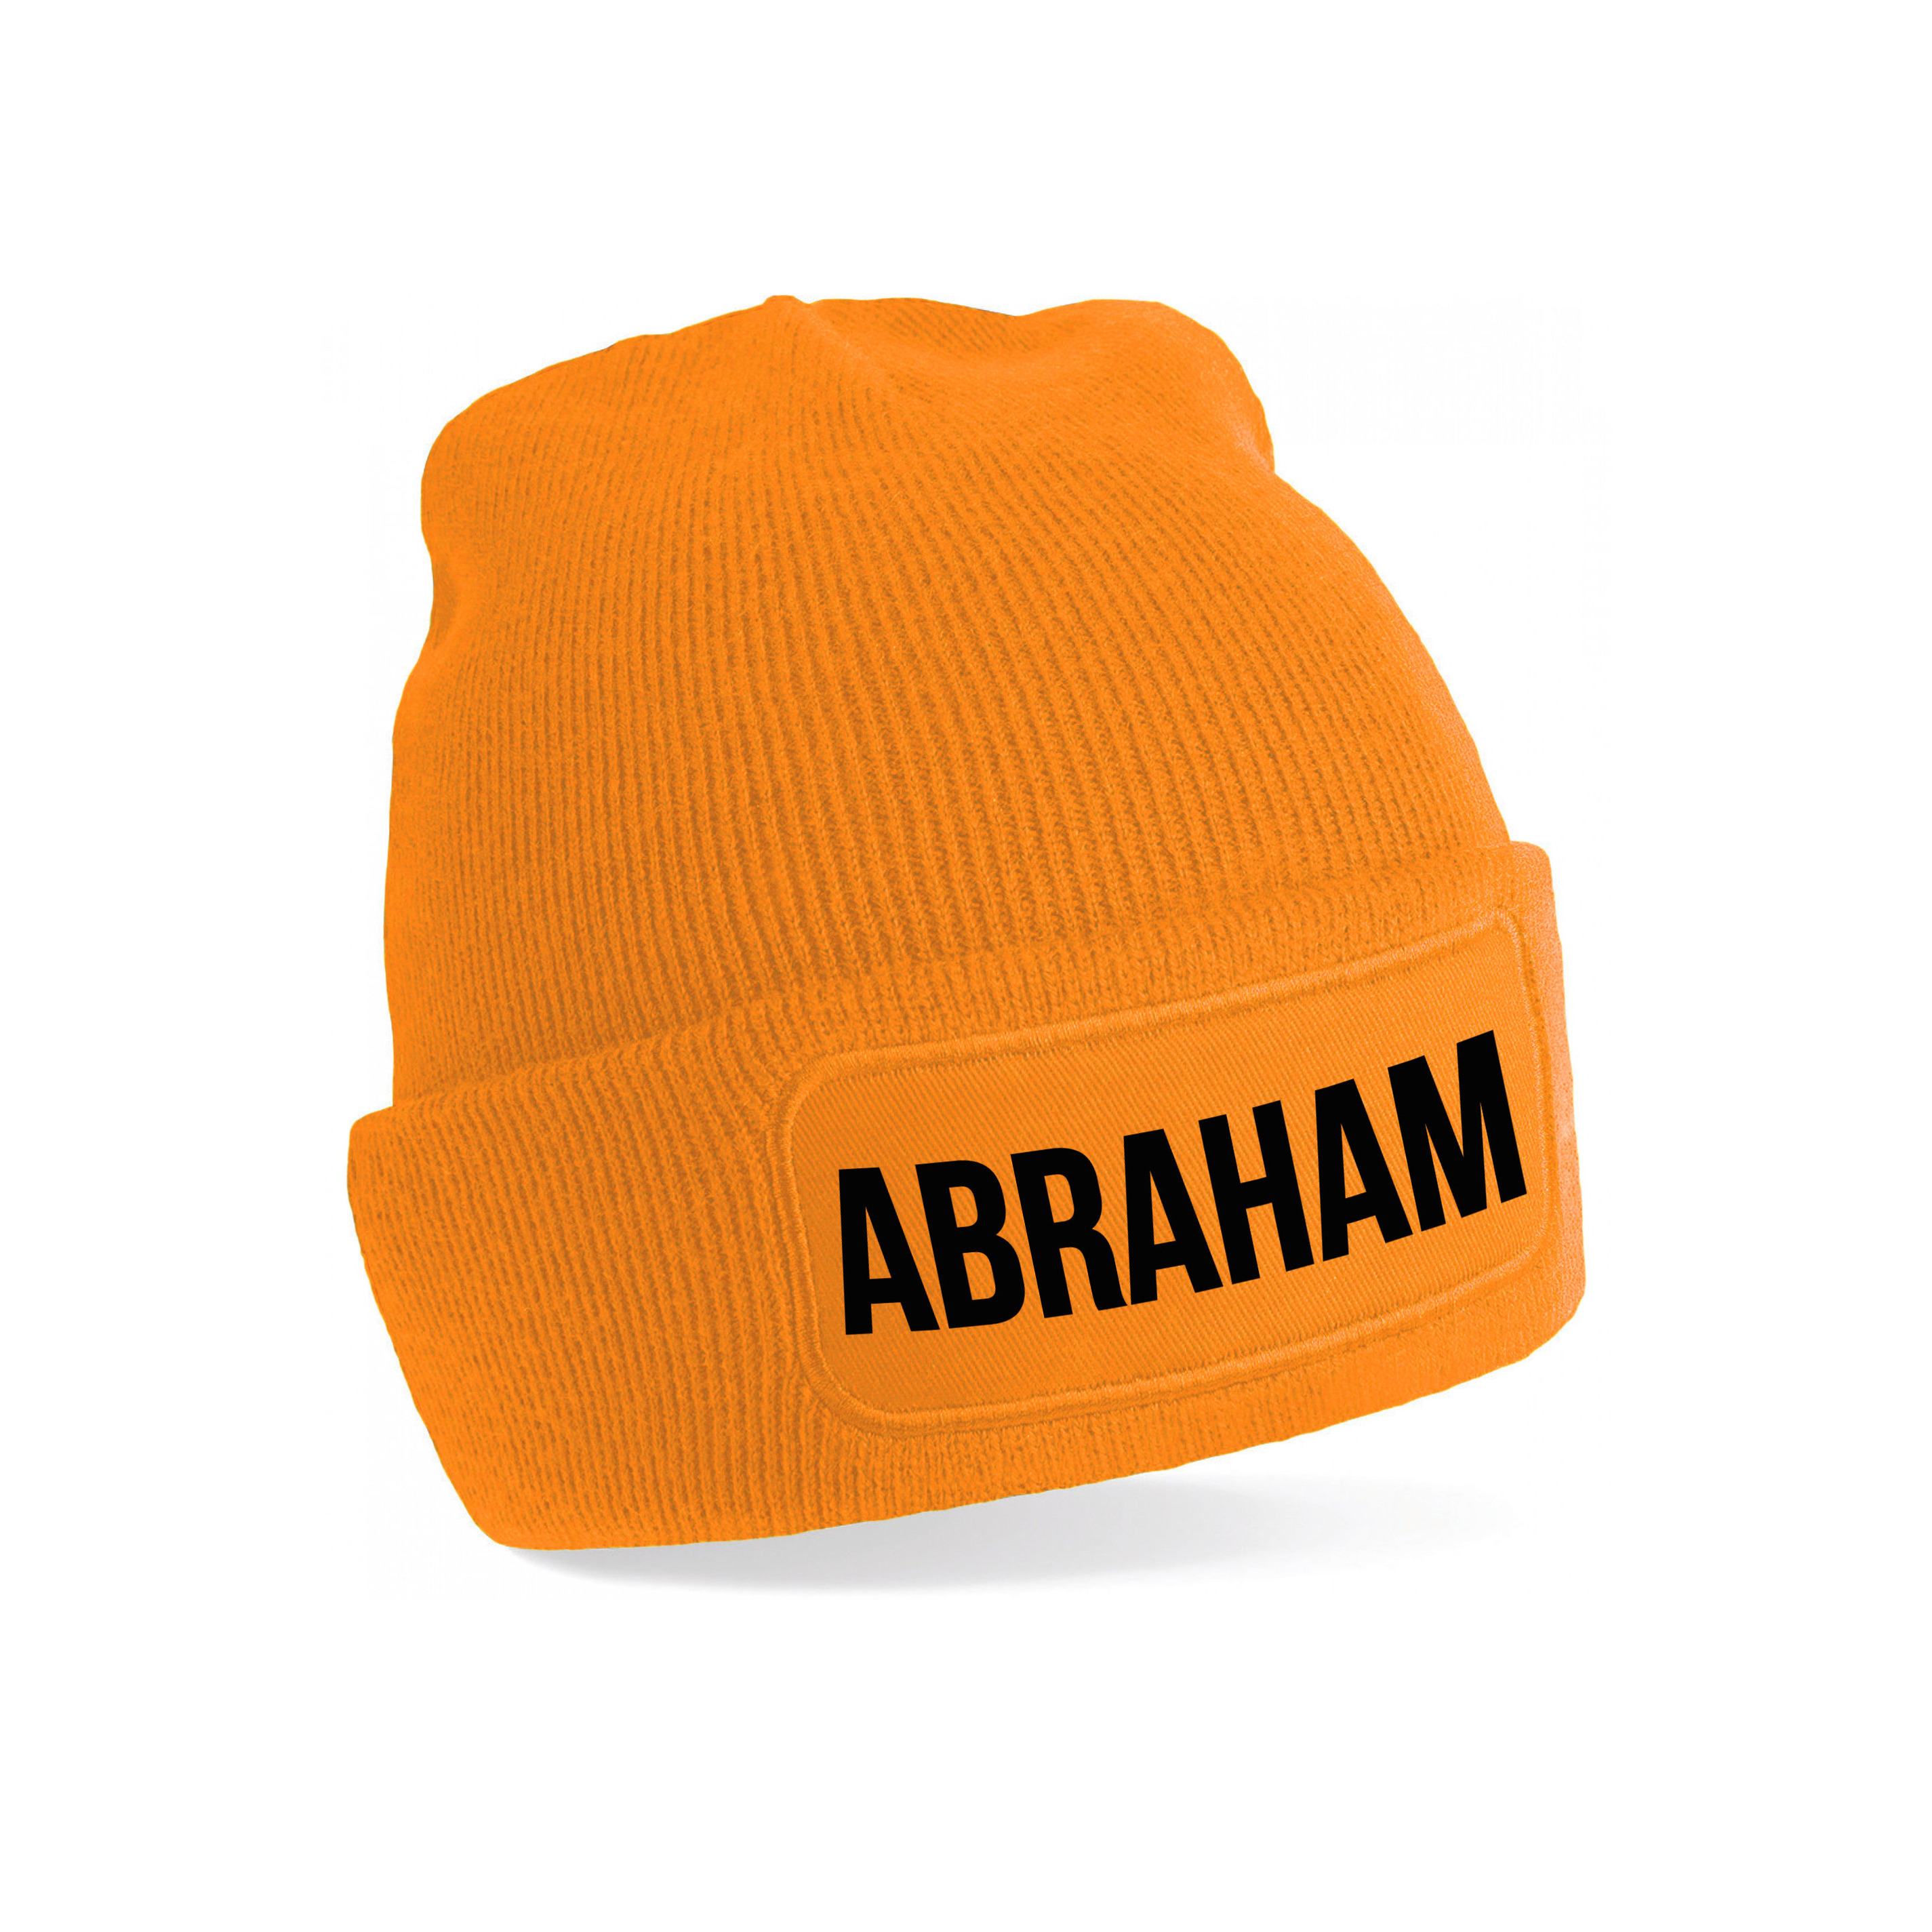 Abraham muts unisex one size Oranje